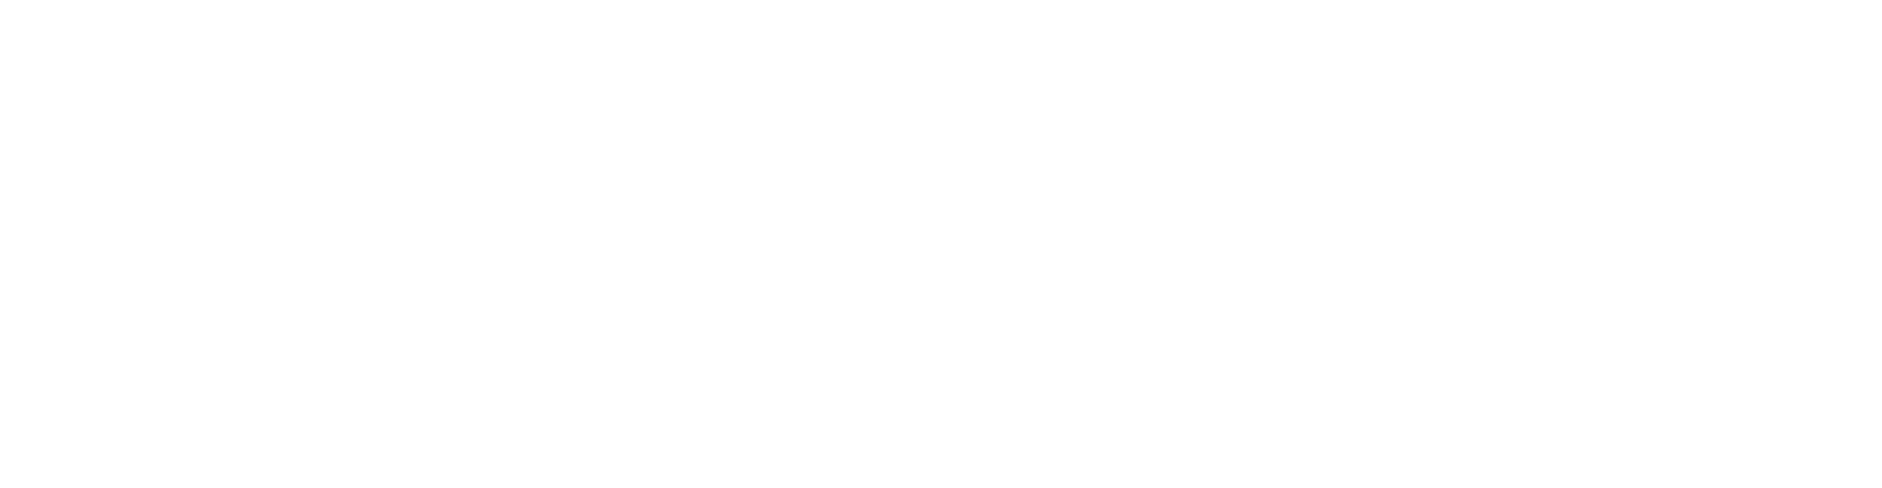 Logo punto kennedy blanco